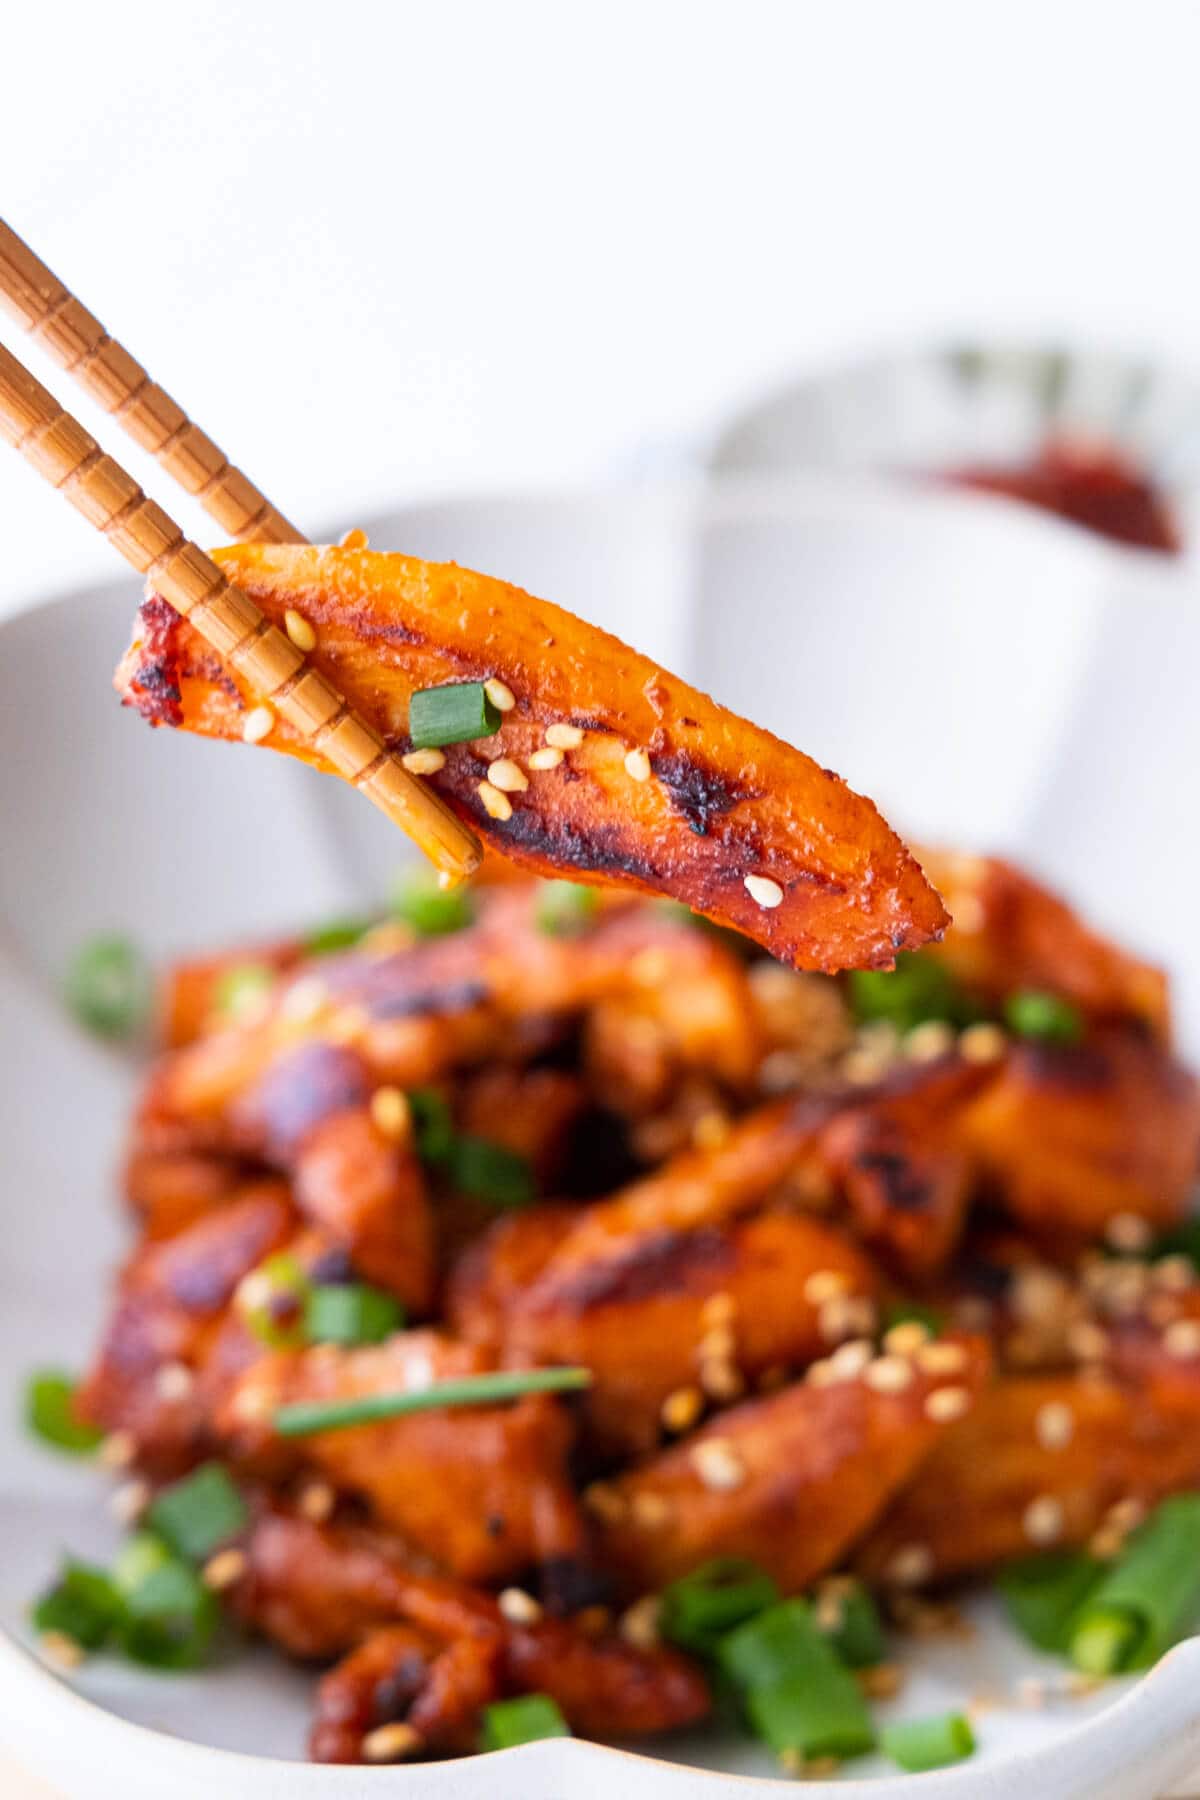 Stir fry Korean spicy chicken with a pair of chopsticks.